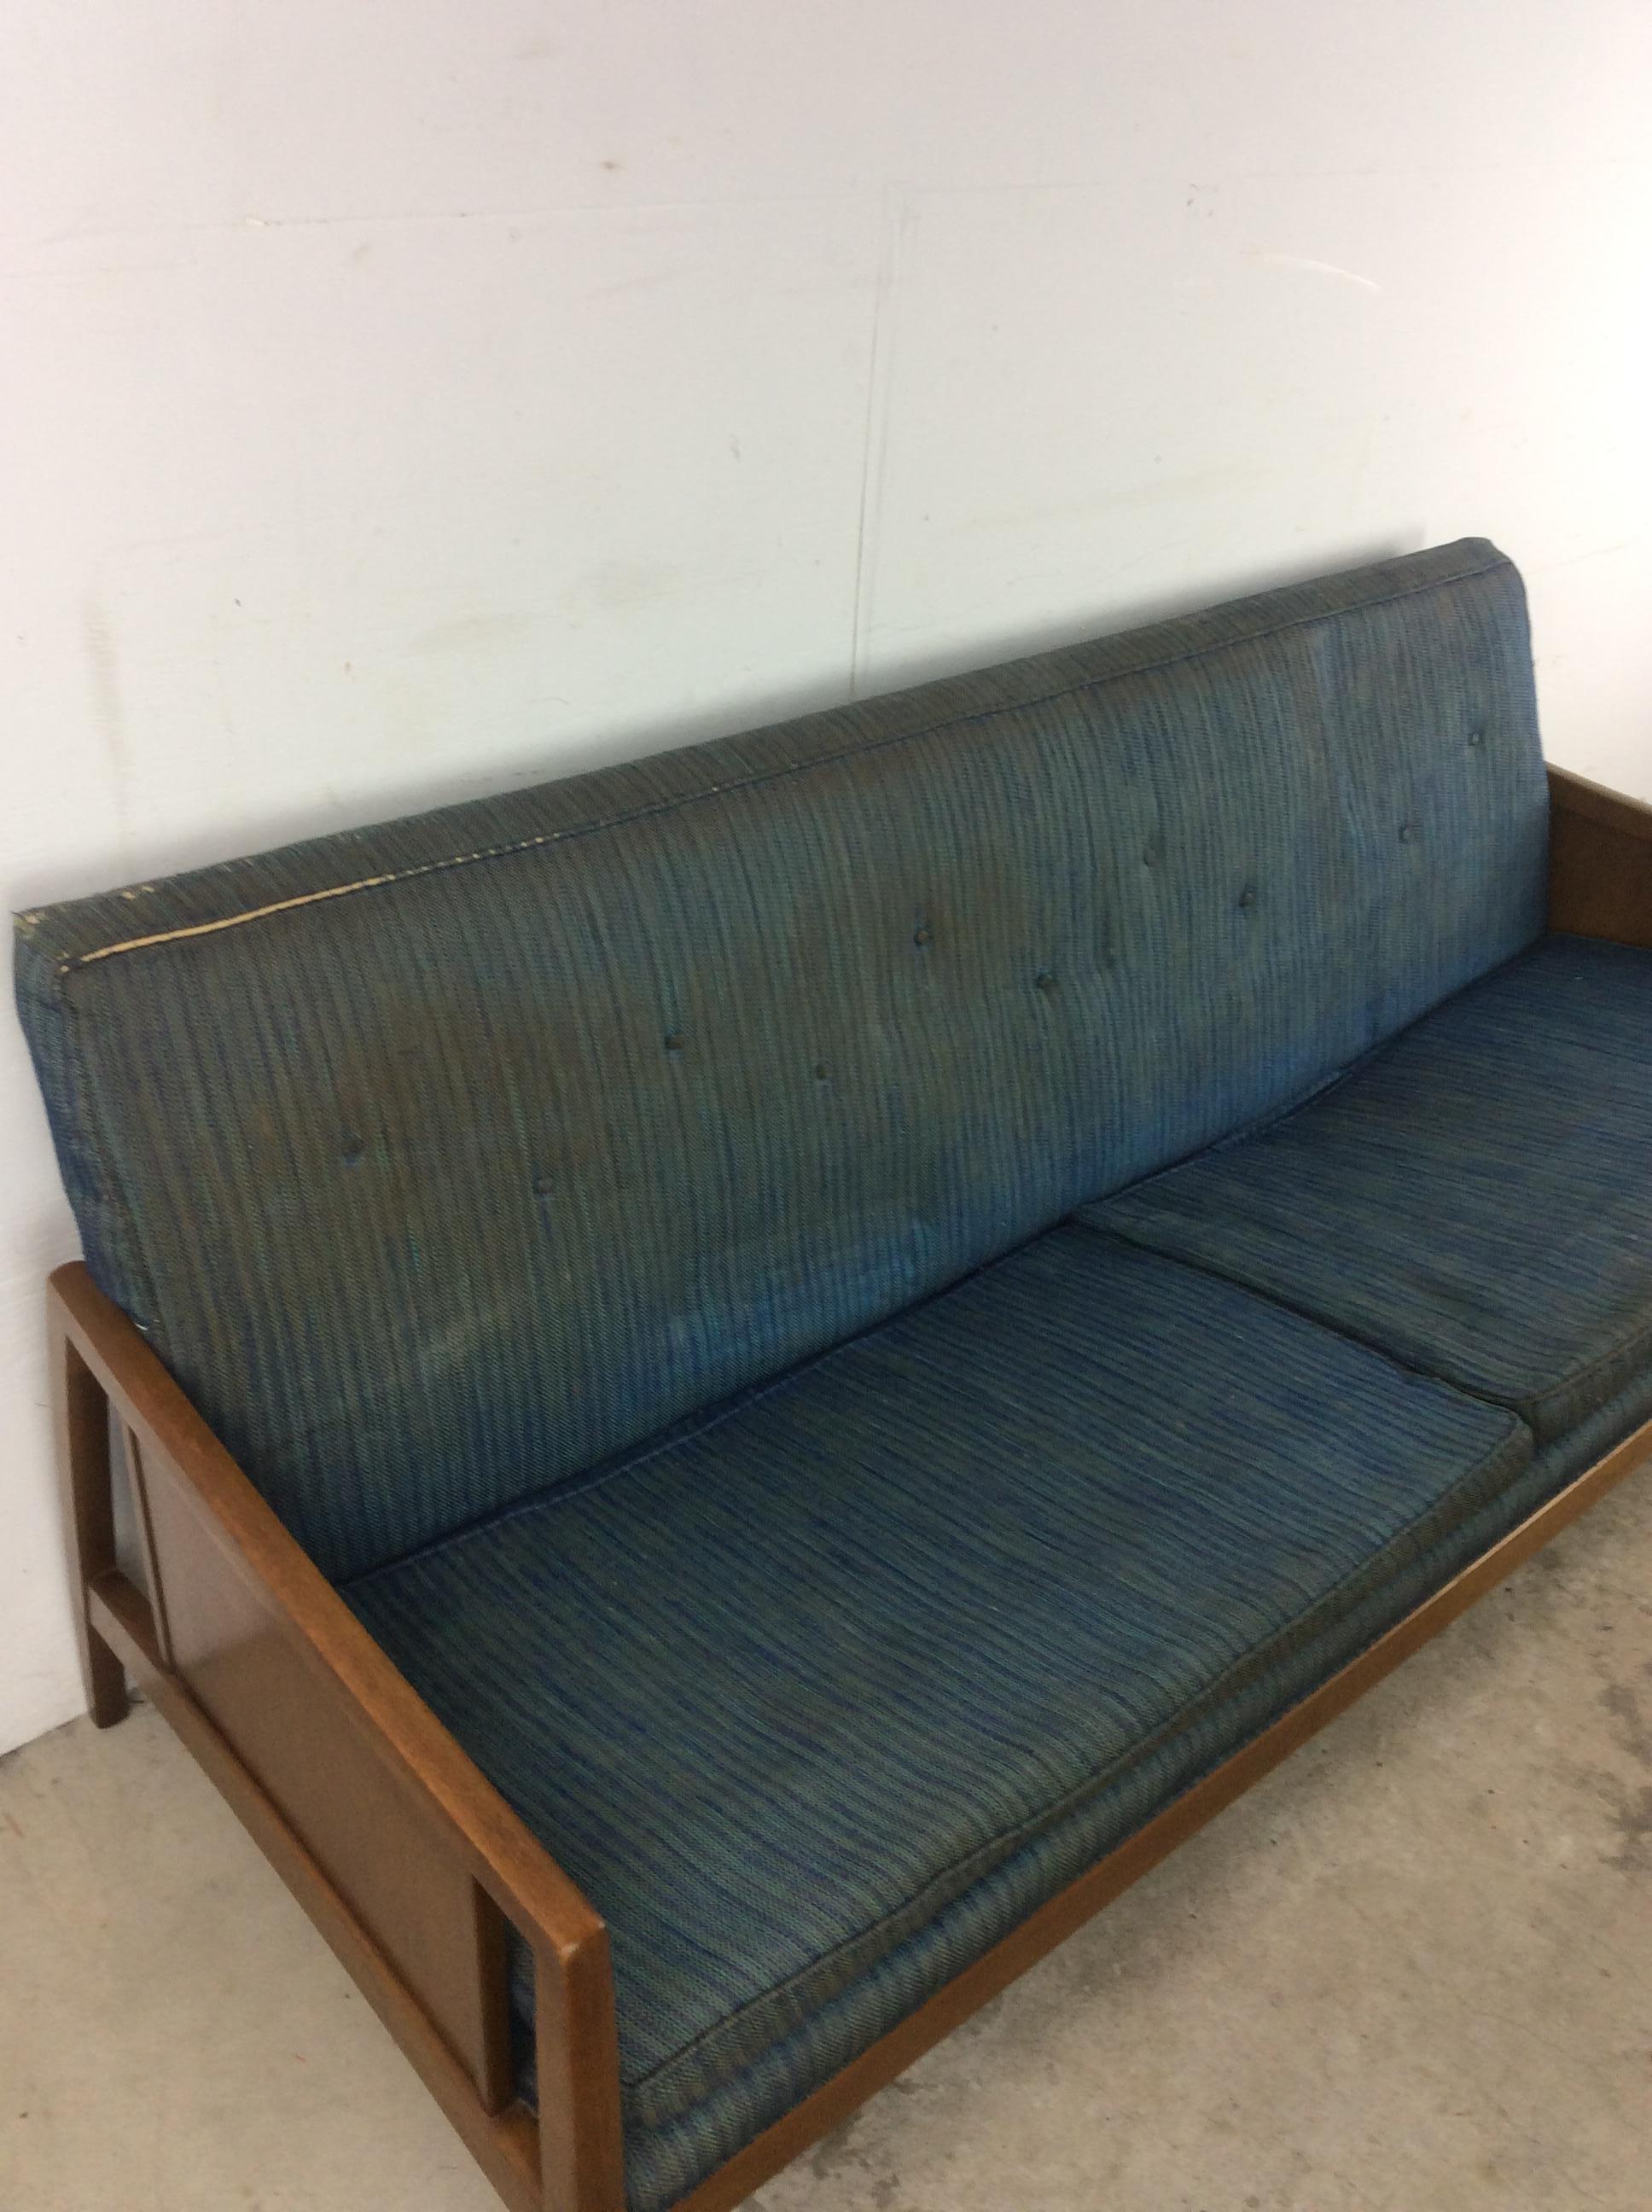 Ce canapé Mid-Century Modern de Drexel Furniture se caractérise par une construction en bois dur, une finition originale en noyer, un revêtement bleu vintage avec coussins amovibles, des accoudoirs joliment travaillés et des pieds fuselés. 

Le